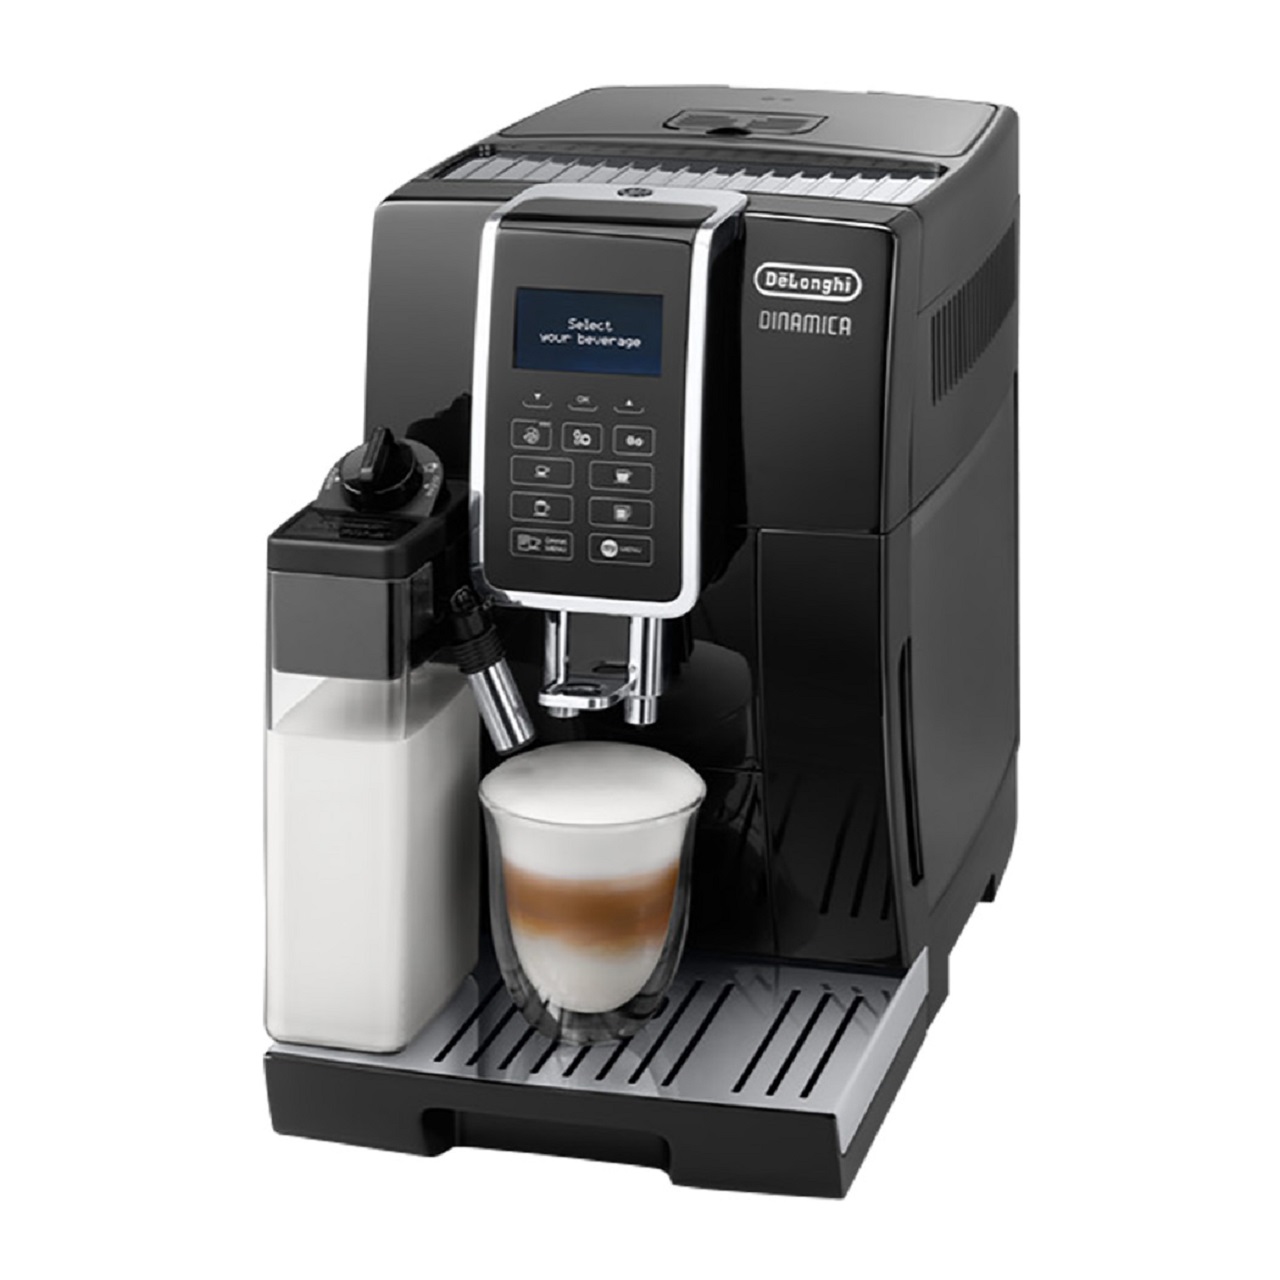 デロンギ ディナミカECAM35055B全自動コーヒーマシン